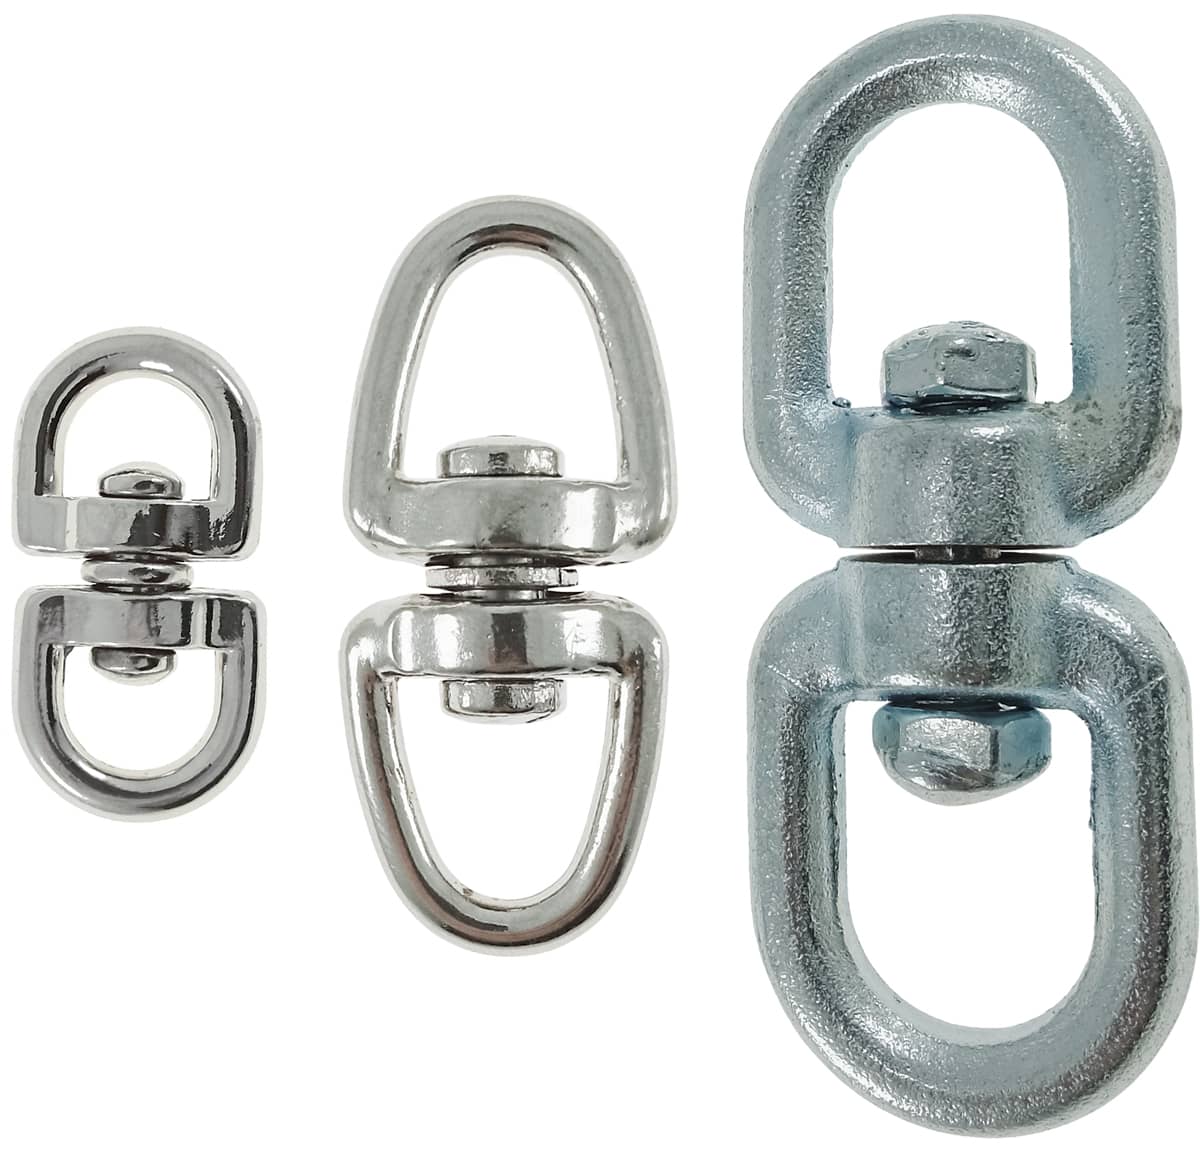 Anilla doble giratoria (rodete doble o grillete giratorio) para unión de cuerdas, cadenas y cables, varios tamaños 39x19x3 mm (3/8”), 55x24x4 mm (1/2”), 70x31x5 mm (3/4”), 70x31x5 mm (3/4”) y 90x19x7 mm (1”). Acero galvanizado, usos múltiples.